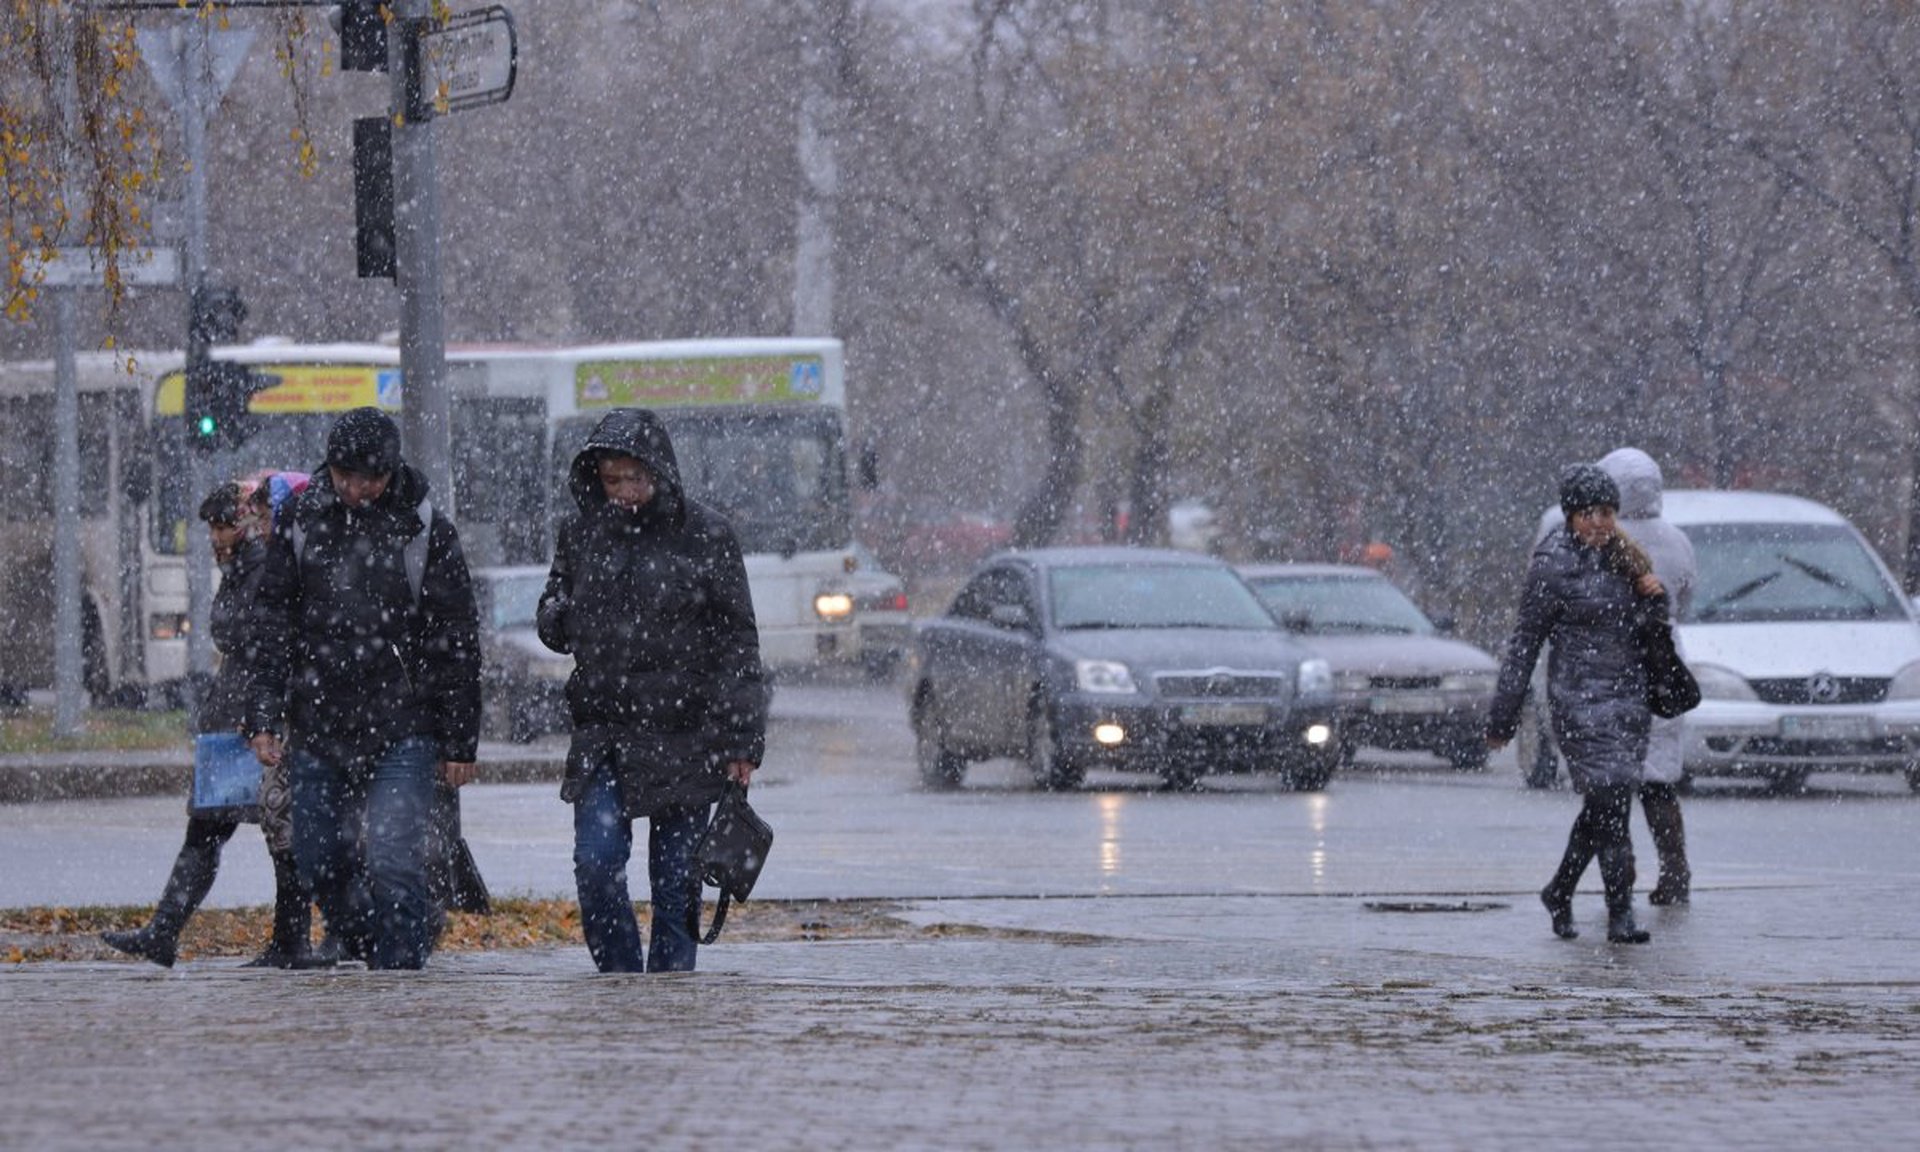 Погода терпя. Гололед. Штормовое предупреждение. Казахстан дождь. Снег и гололед на трассе.